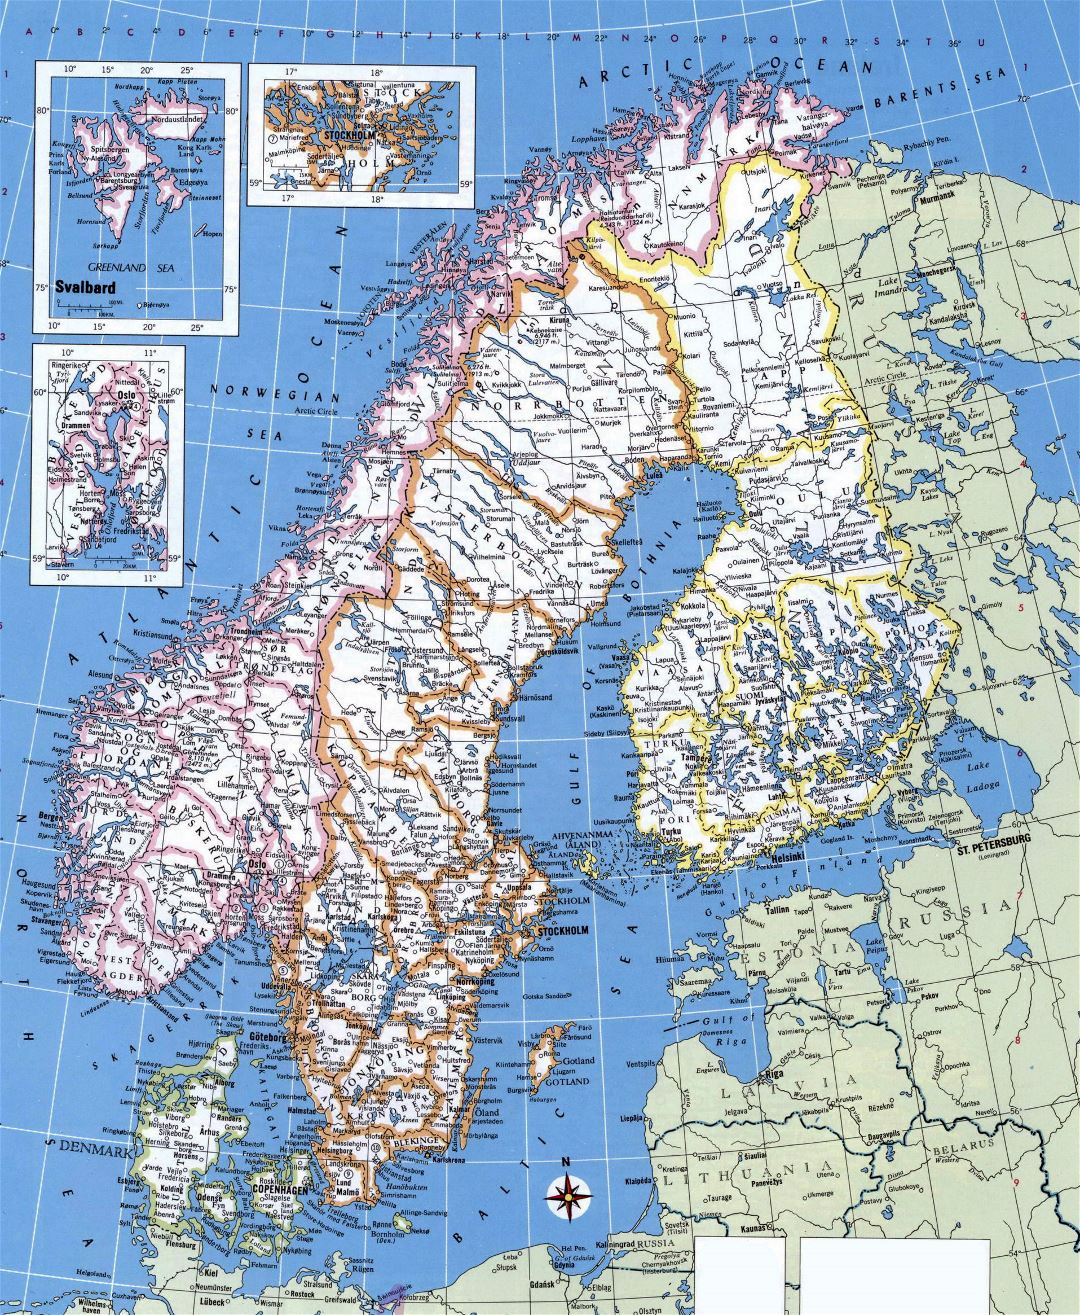 Grande detallado mapa político y administrativo de Noruega, Suecia, Finlandia y Dinamarca con principales ciudades